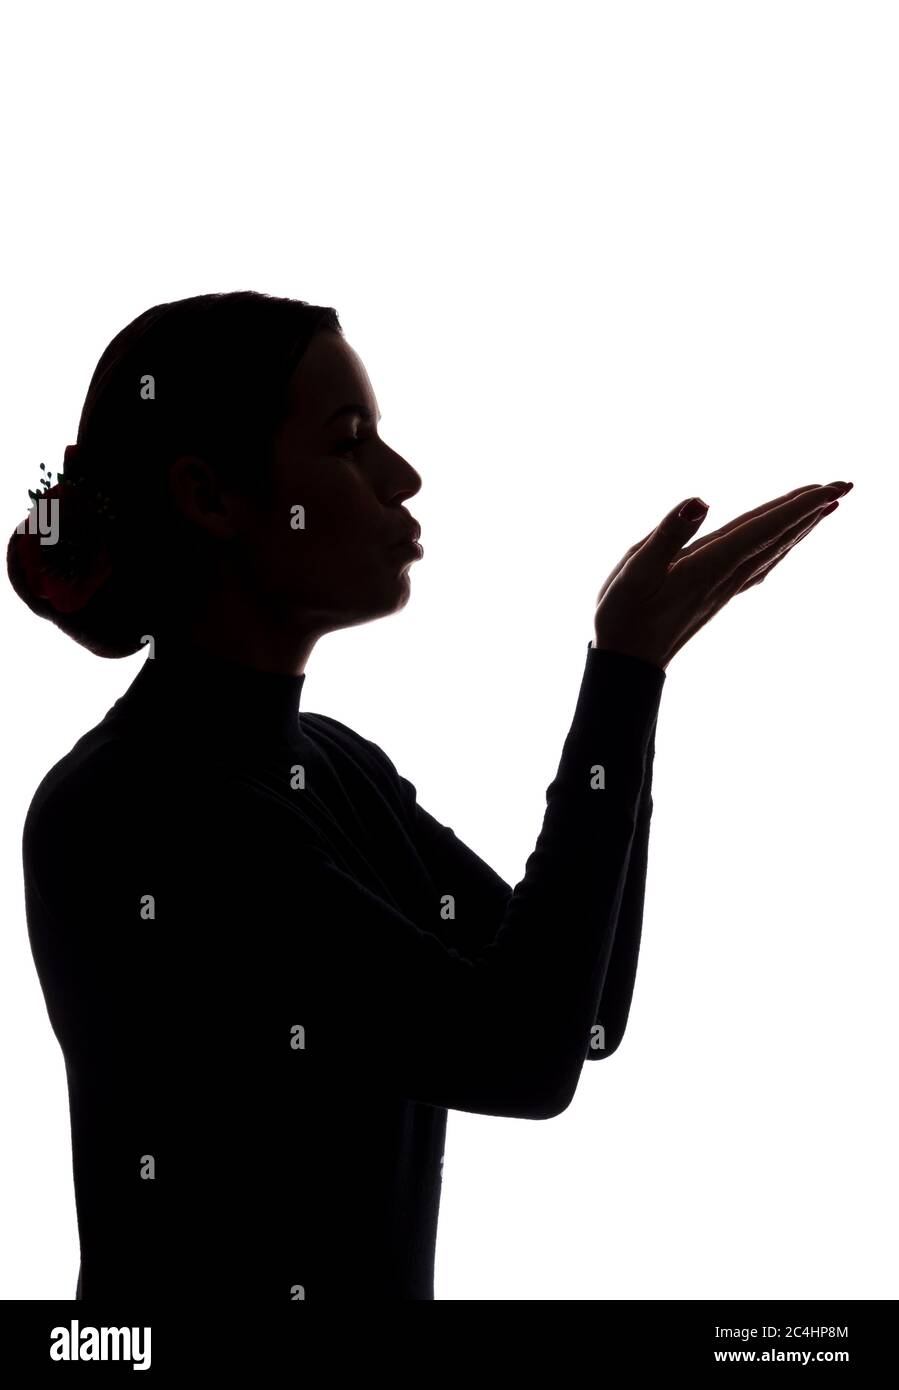 Une jeune femme montre ses mains en avant, envoyant un baiser - silhouette Banque D'Images